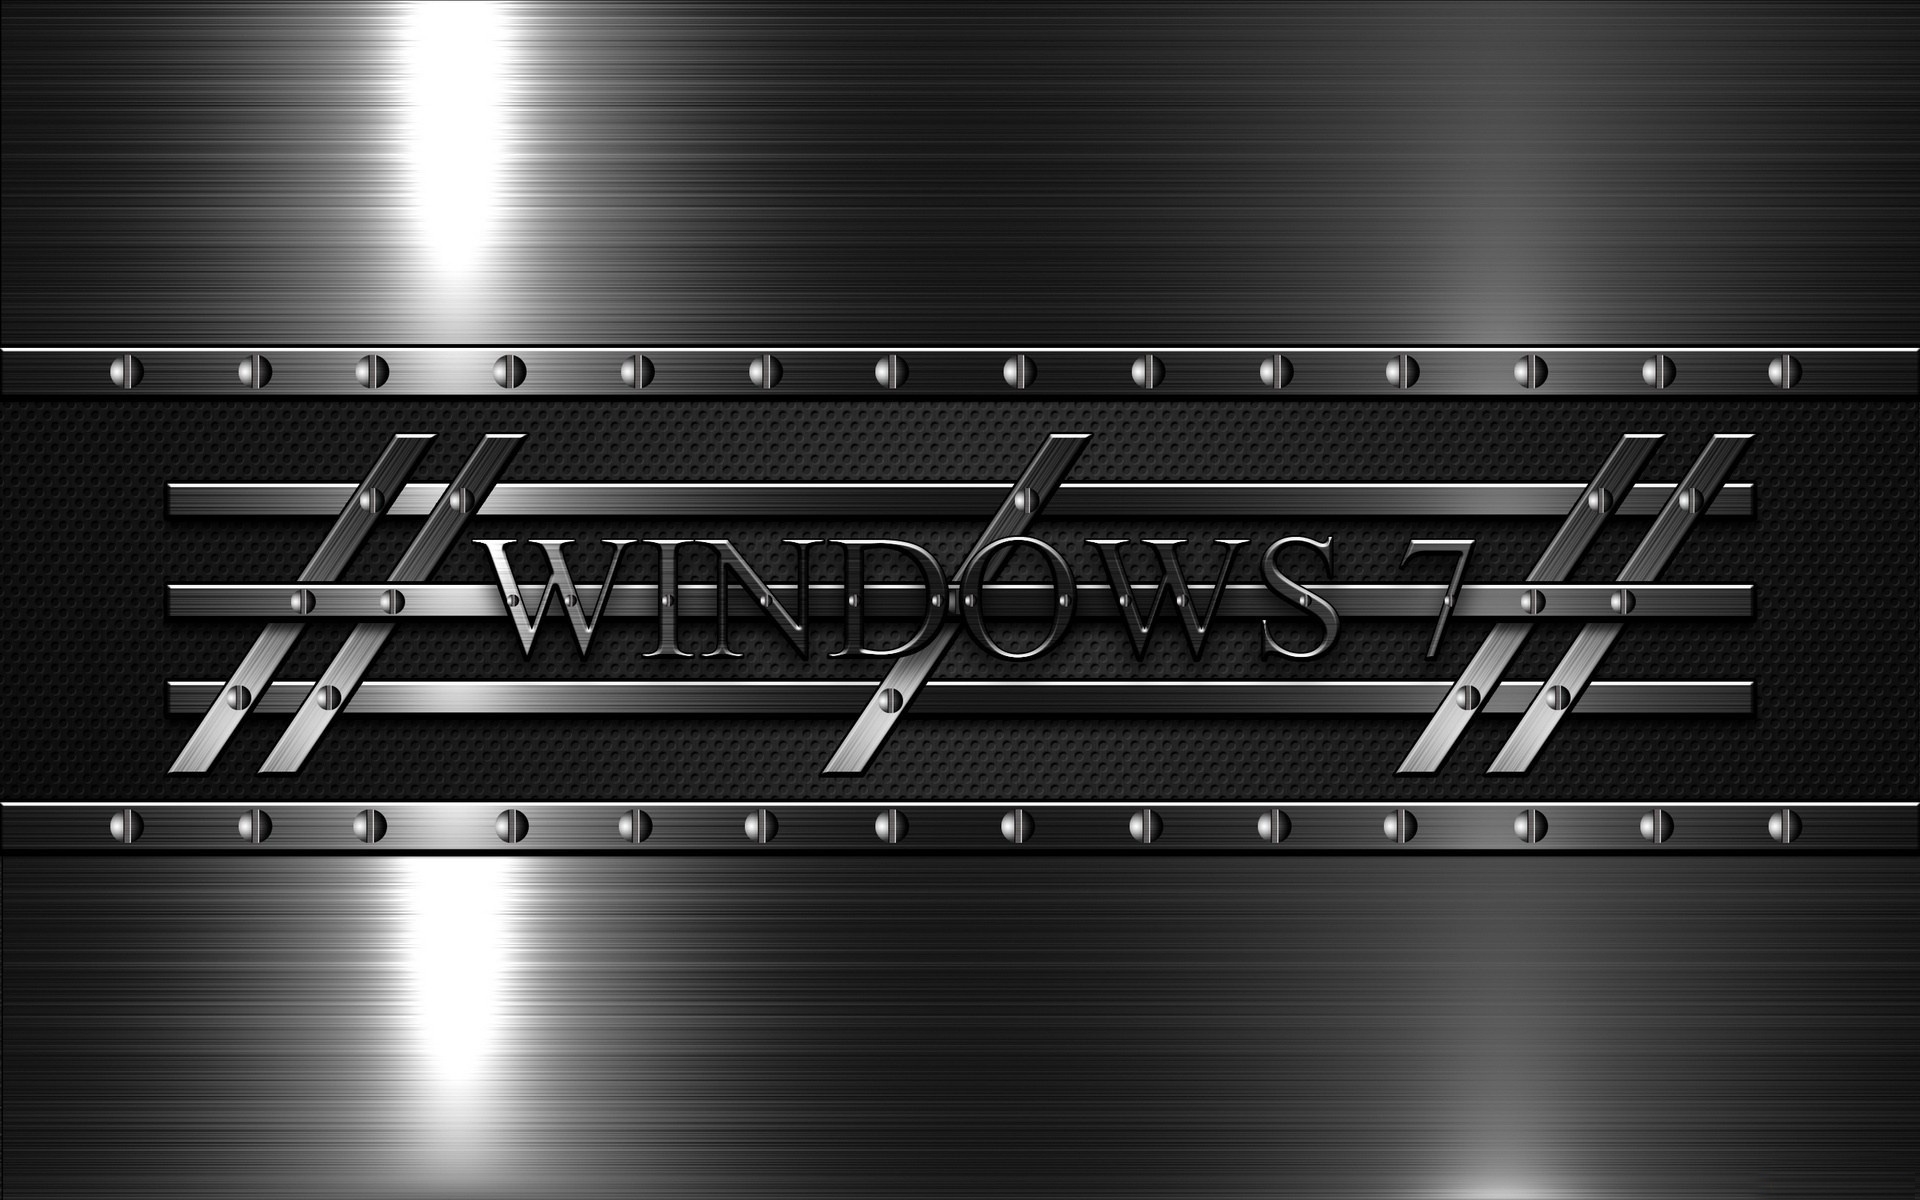 Bạn muốn tìm kiếm hình nền Windows 7 đen cho máy tính của mình? Hãy nhấp chuột ngay vào đây và khám phá một thế giới vô tận của các tùy chọn tin cậy và tuyệt đẹp. Hãy cho máy tính của bạn một vẻ đẹp đầy lôi cuốn và sức sống.